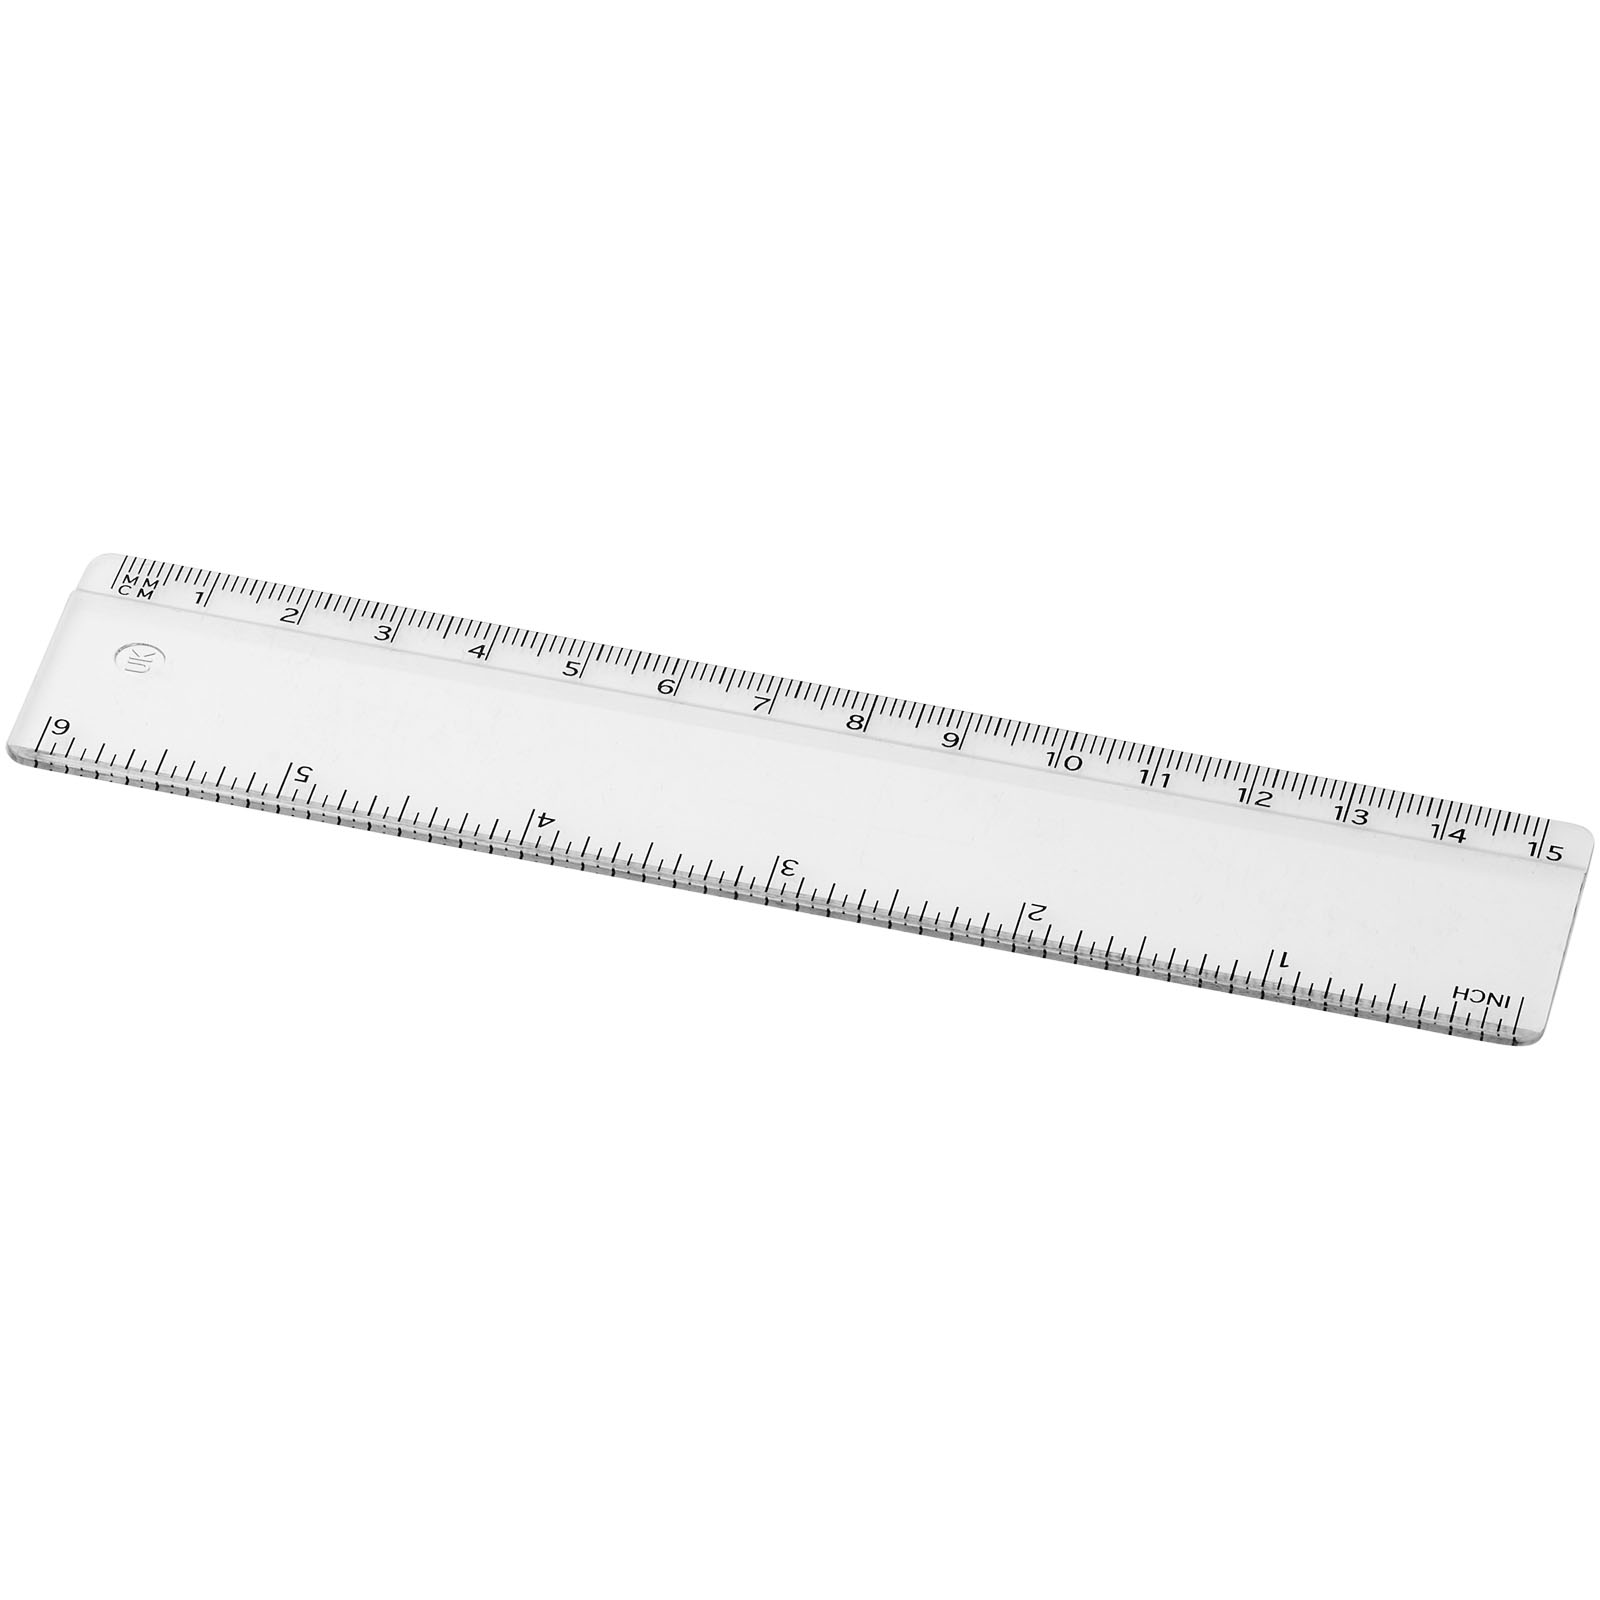 Notebooks & Desk Essentials - Renzo 15 cm plastic ruler